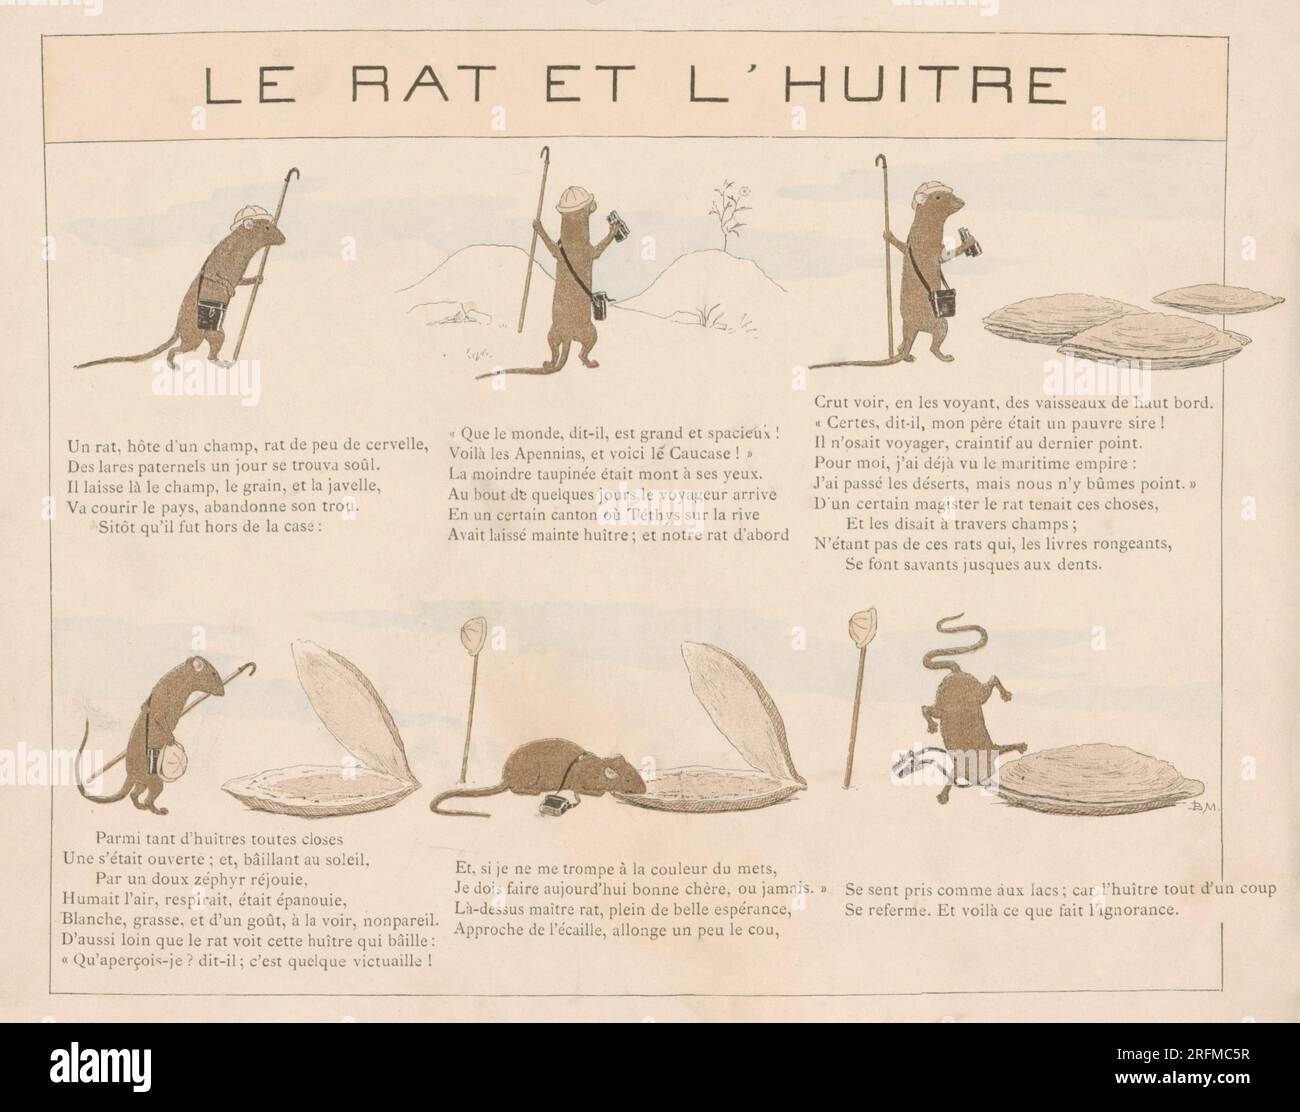 Il Rat e l'Oyster. Tavola illustrata da Louis-Maurice Boutet de Monvel e pubblicata su "la Fontaine: Fables choisies pour les enfants" di Plon, Nourrit et Cie (Parigi), nel 1888. Foto Stock